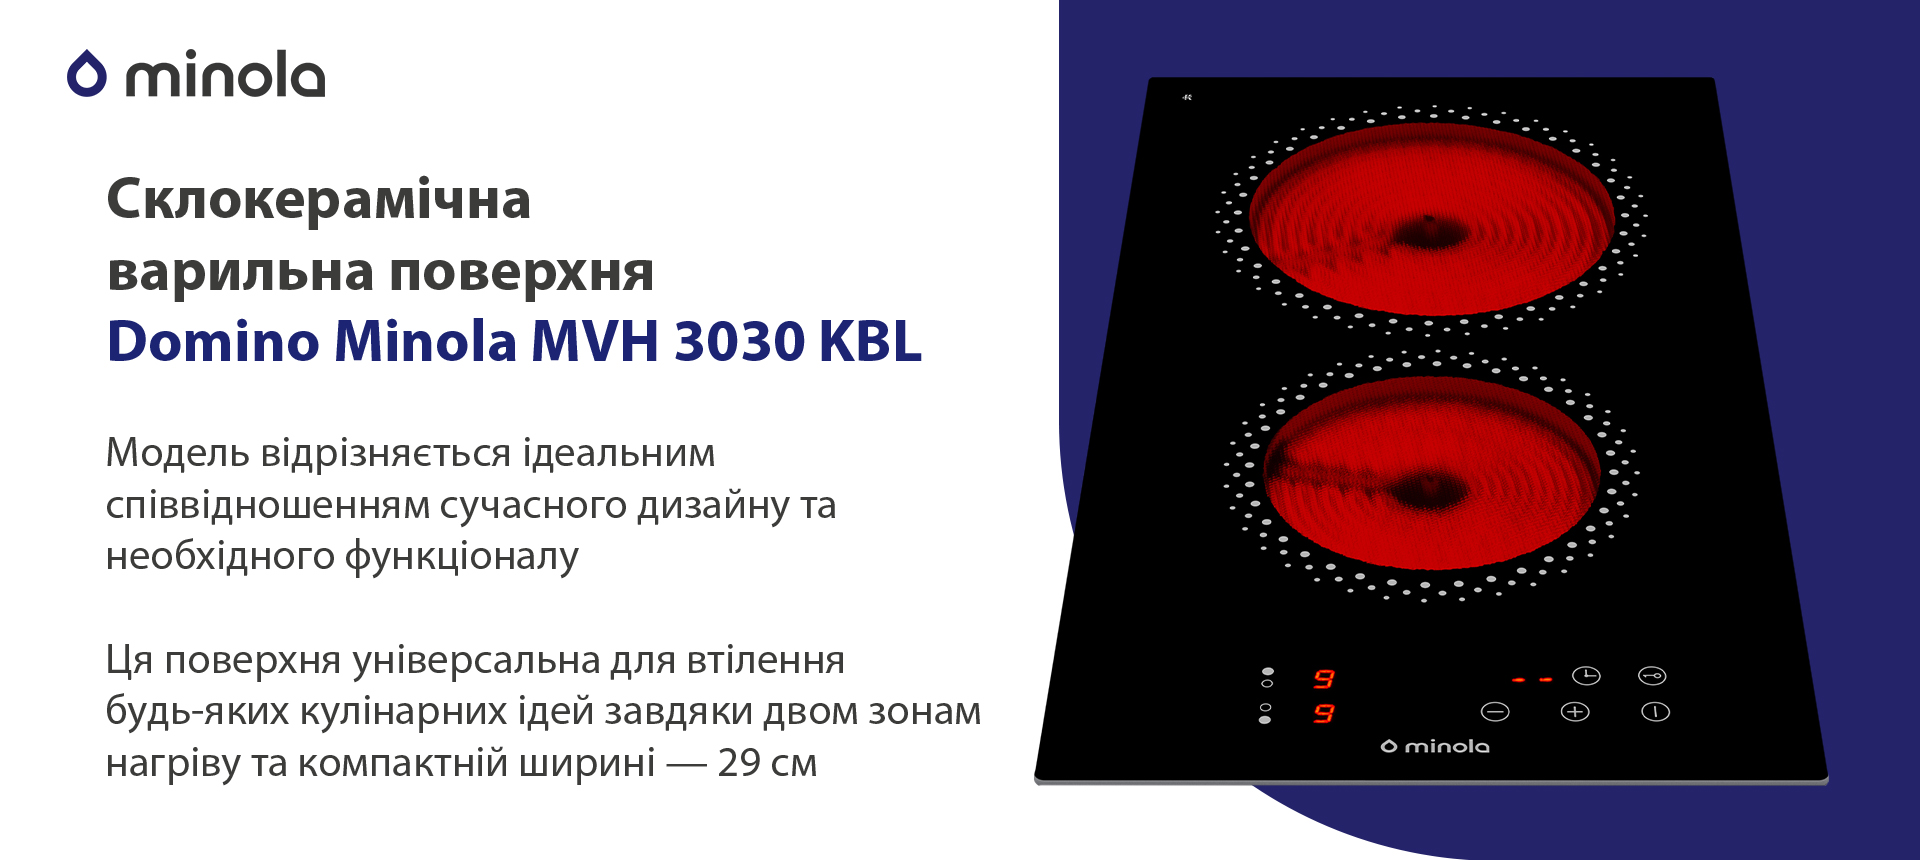 Електрична варильна поверхня Minola Domino MVH 3030 KBL зовнішній вигляд - фото 9